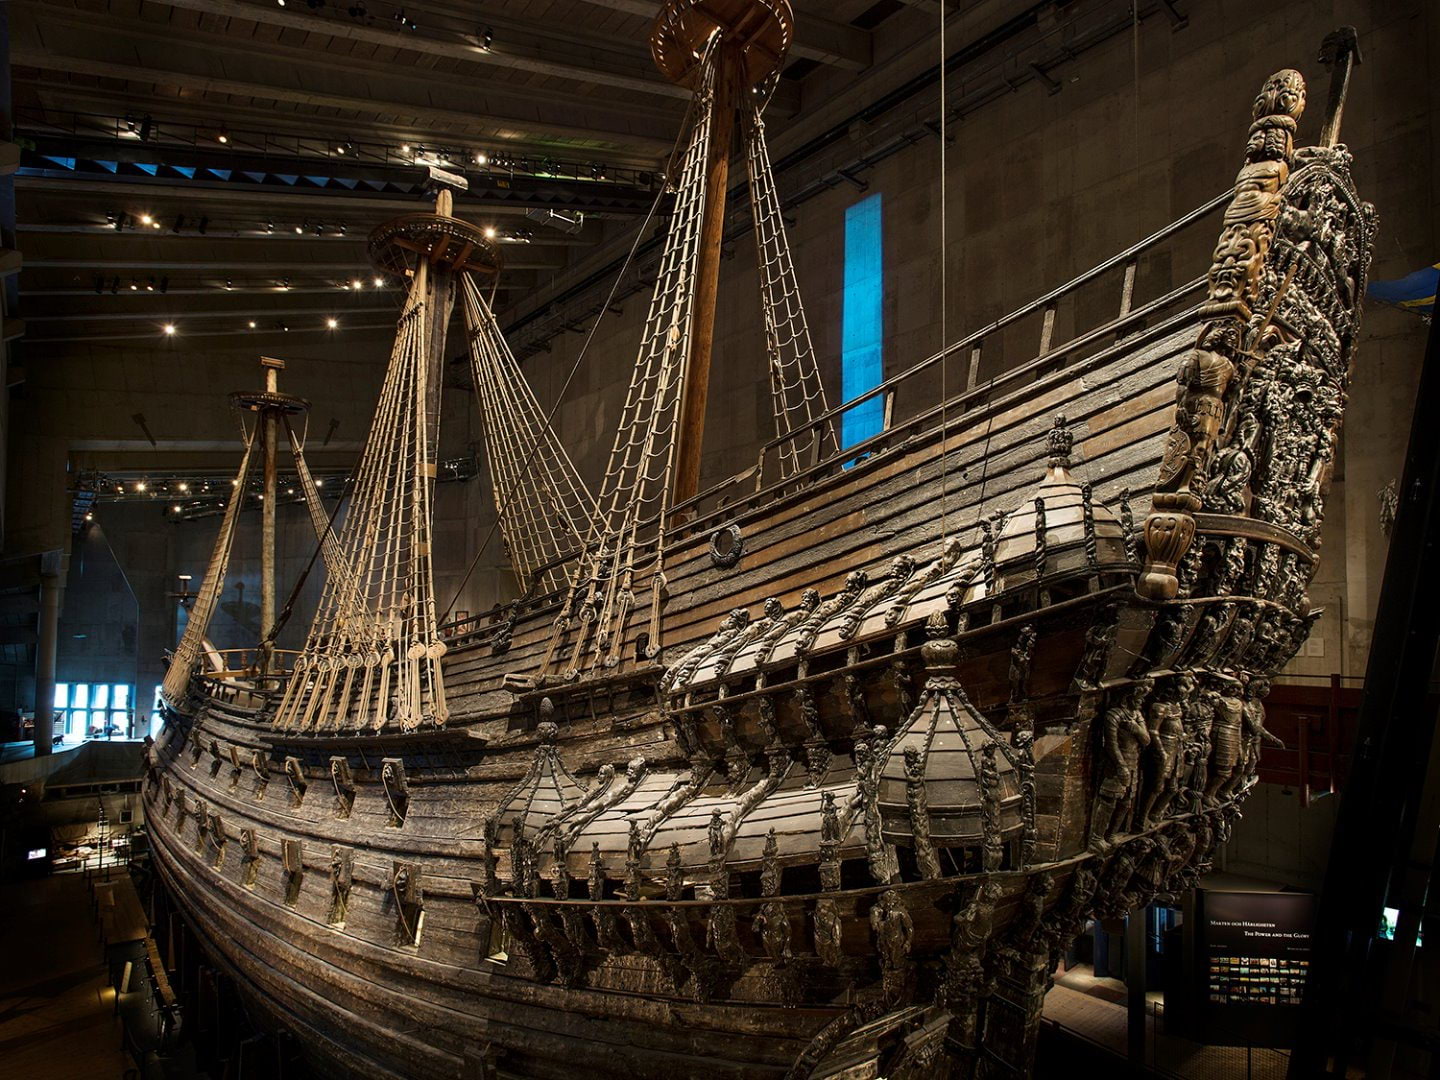 World Wide Vasa – Vasamuseet kommer till dig 